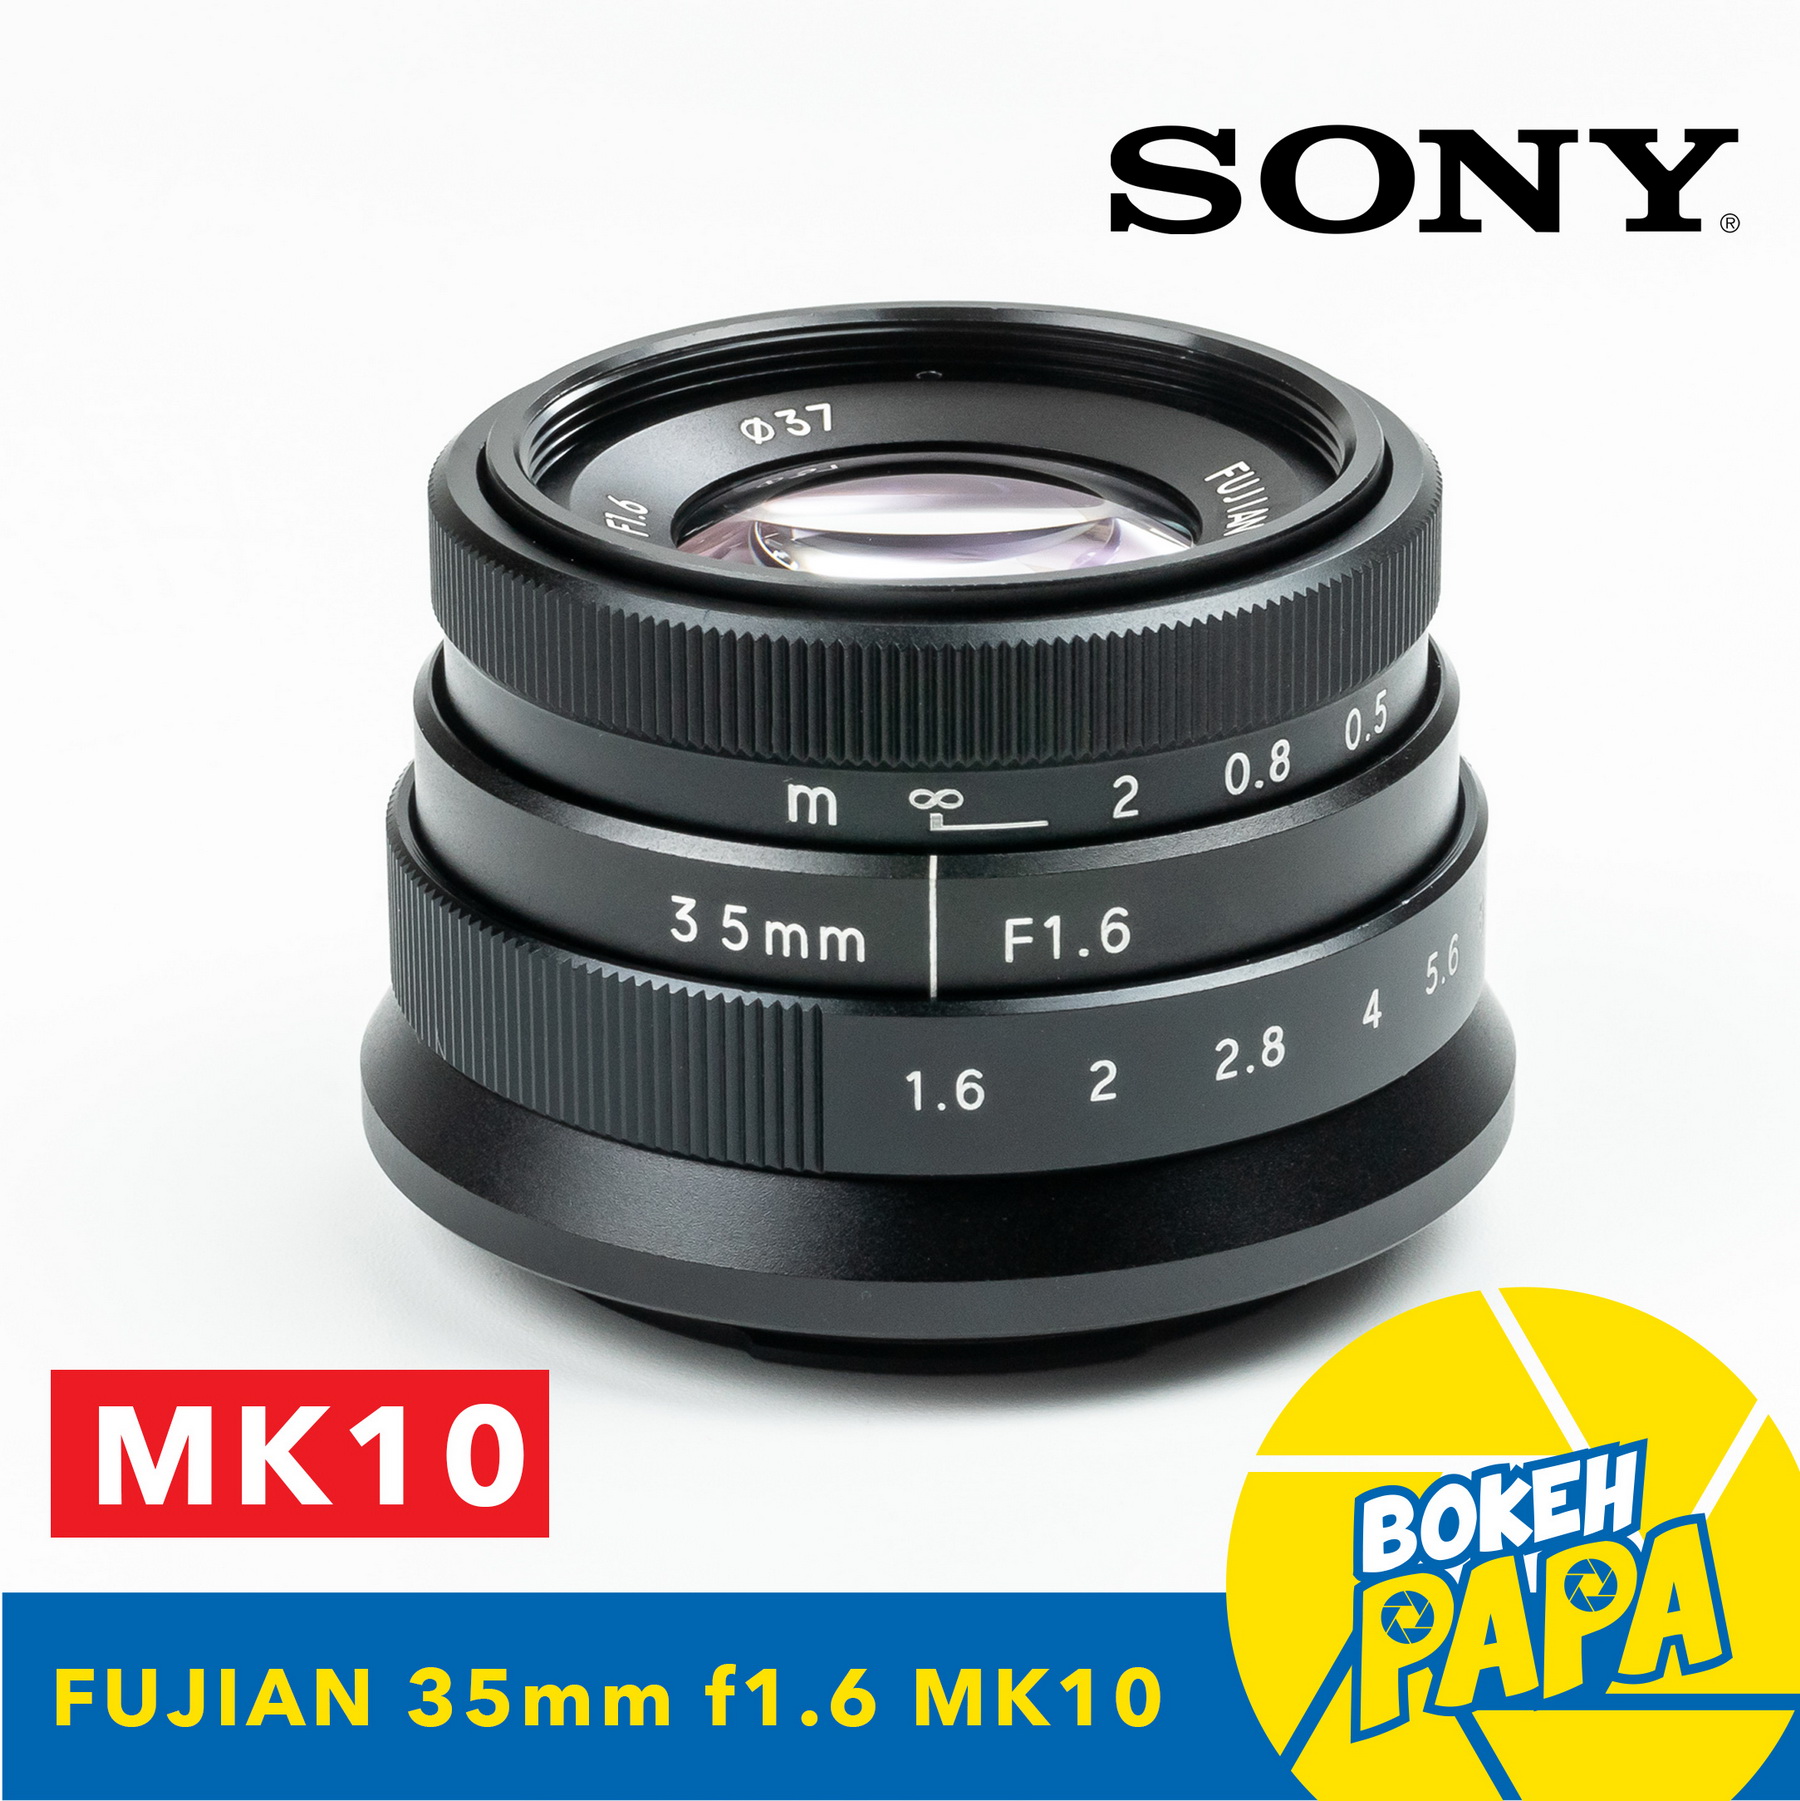 New Fujian X 35mm F1.6 Mark10 สำหรับใส่กล้อง Sony Mirrorless ได้ทุกรุ่น เลนส์หน้าชัดหลังเบลอ ( เลนส์มือหมุน ) ( เลนส์ละลายหลัง ) ( สำหรับ กล้อง โซนี่ ) ( 35 mm )